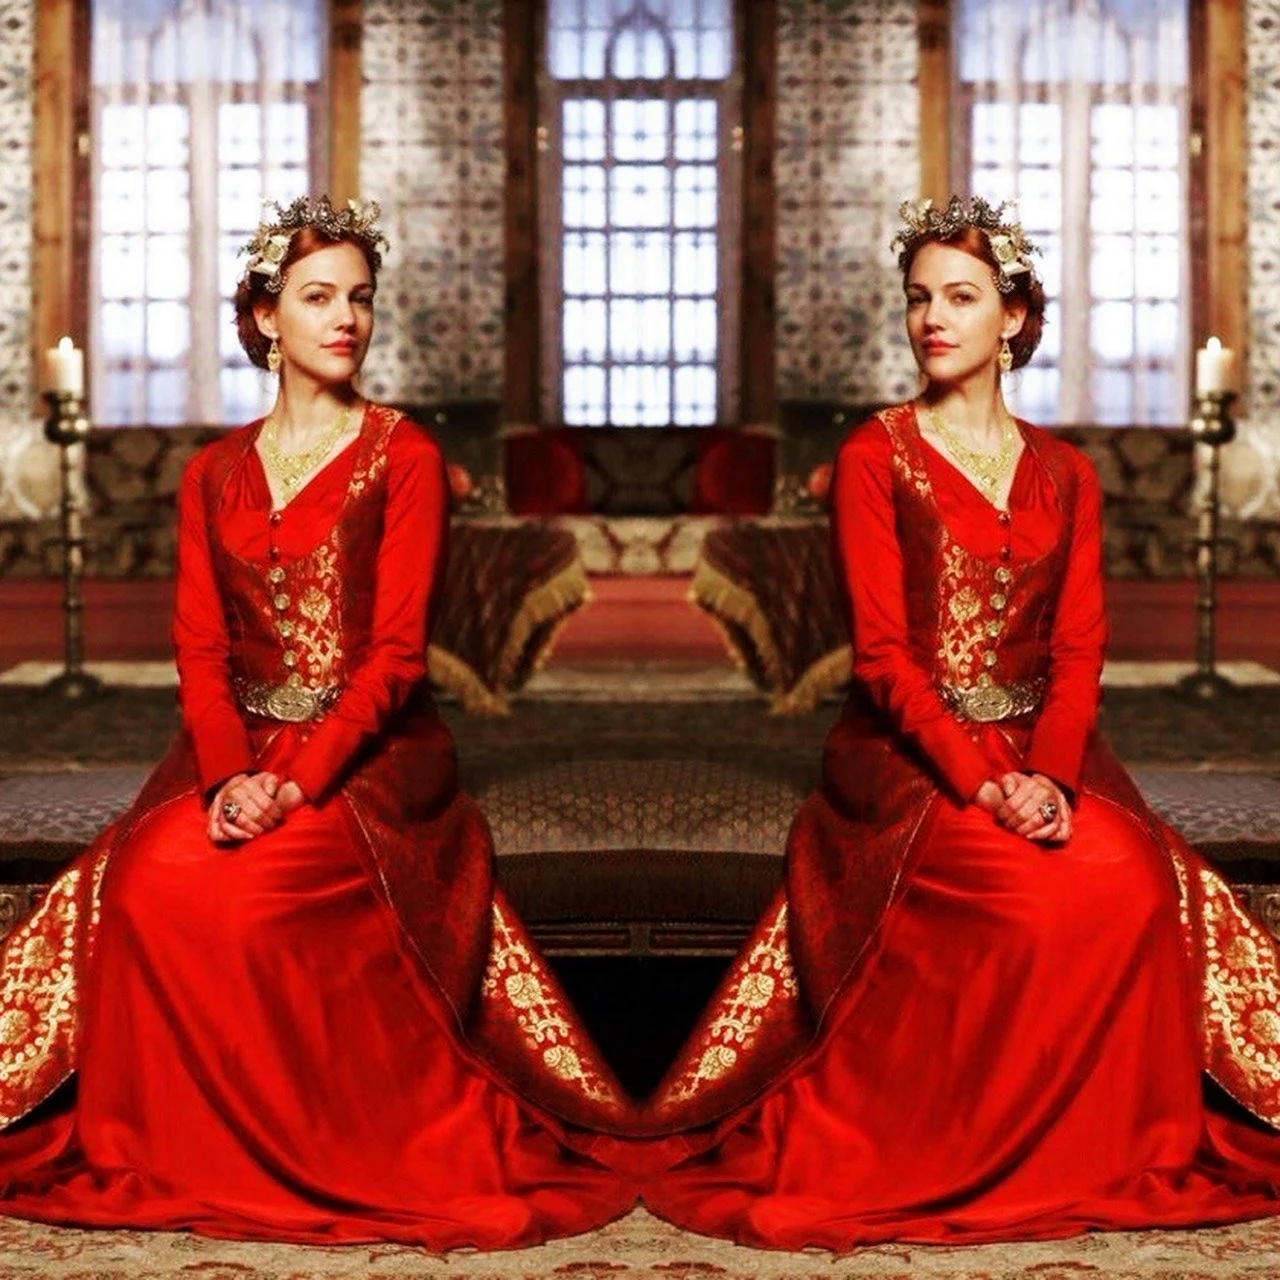 Махидевран Султан в Красном платье